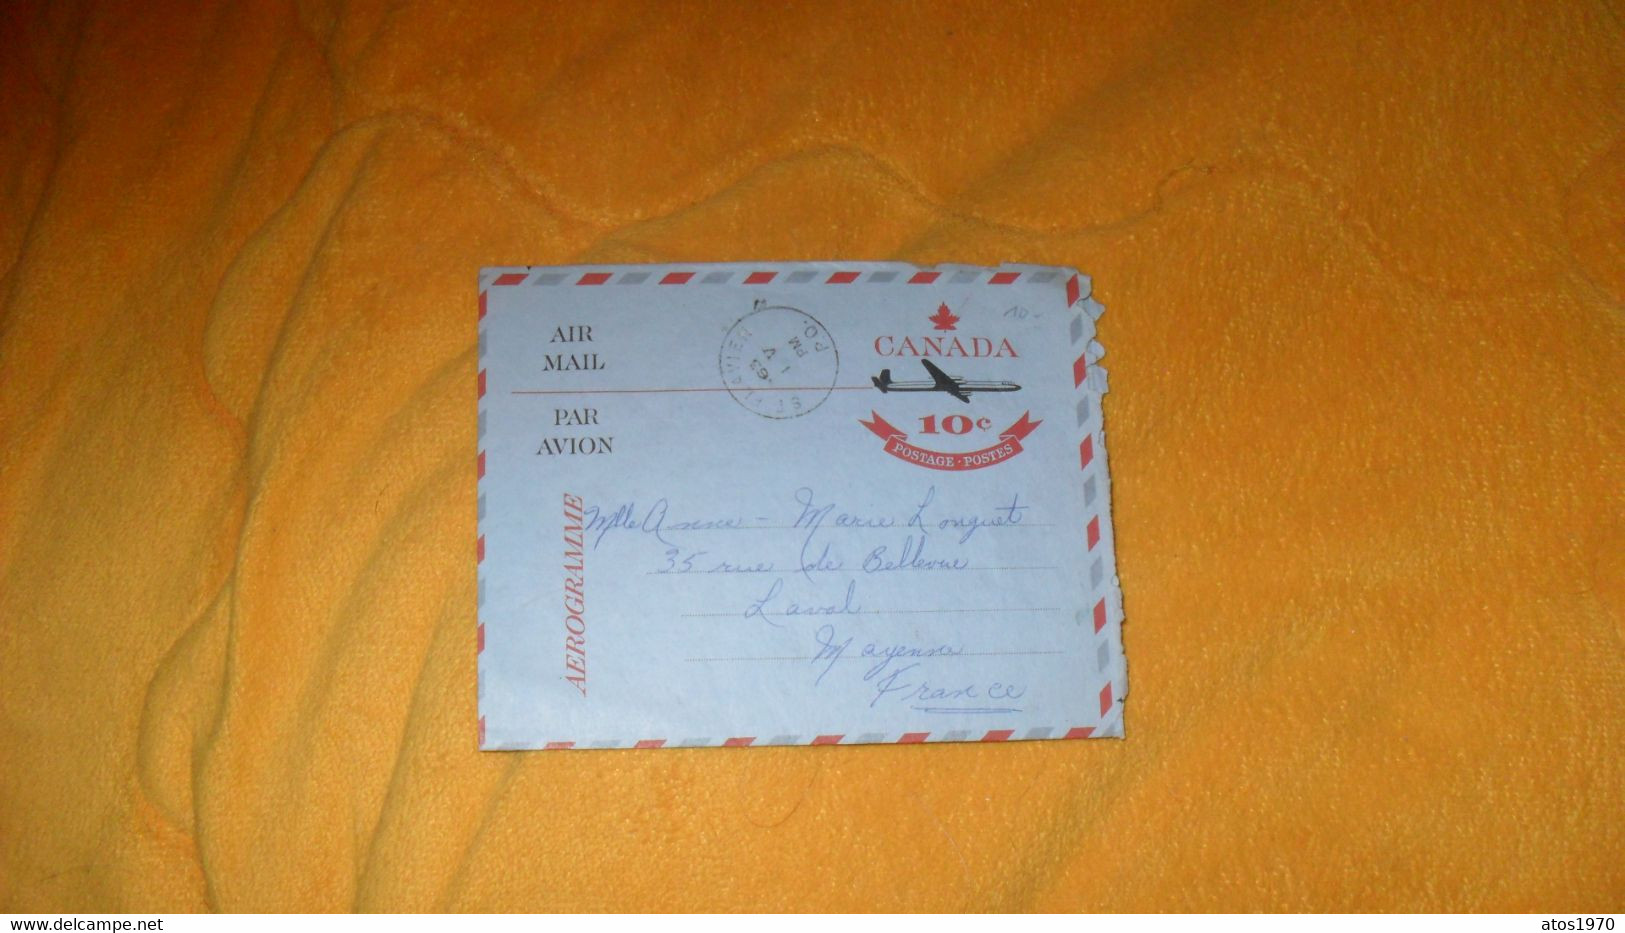 LETTRE ANCIENNE AEROGRAMME DE 1963../ CANADA 10C POSTAGE POSTES..CACHET ST FLAVIEN CANADA POUR LAVAL FRANCE - Storia Postale